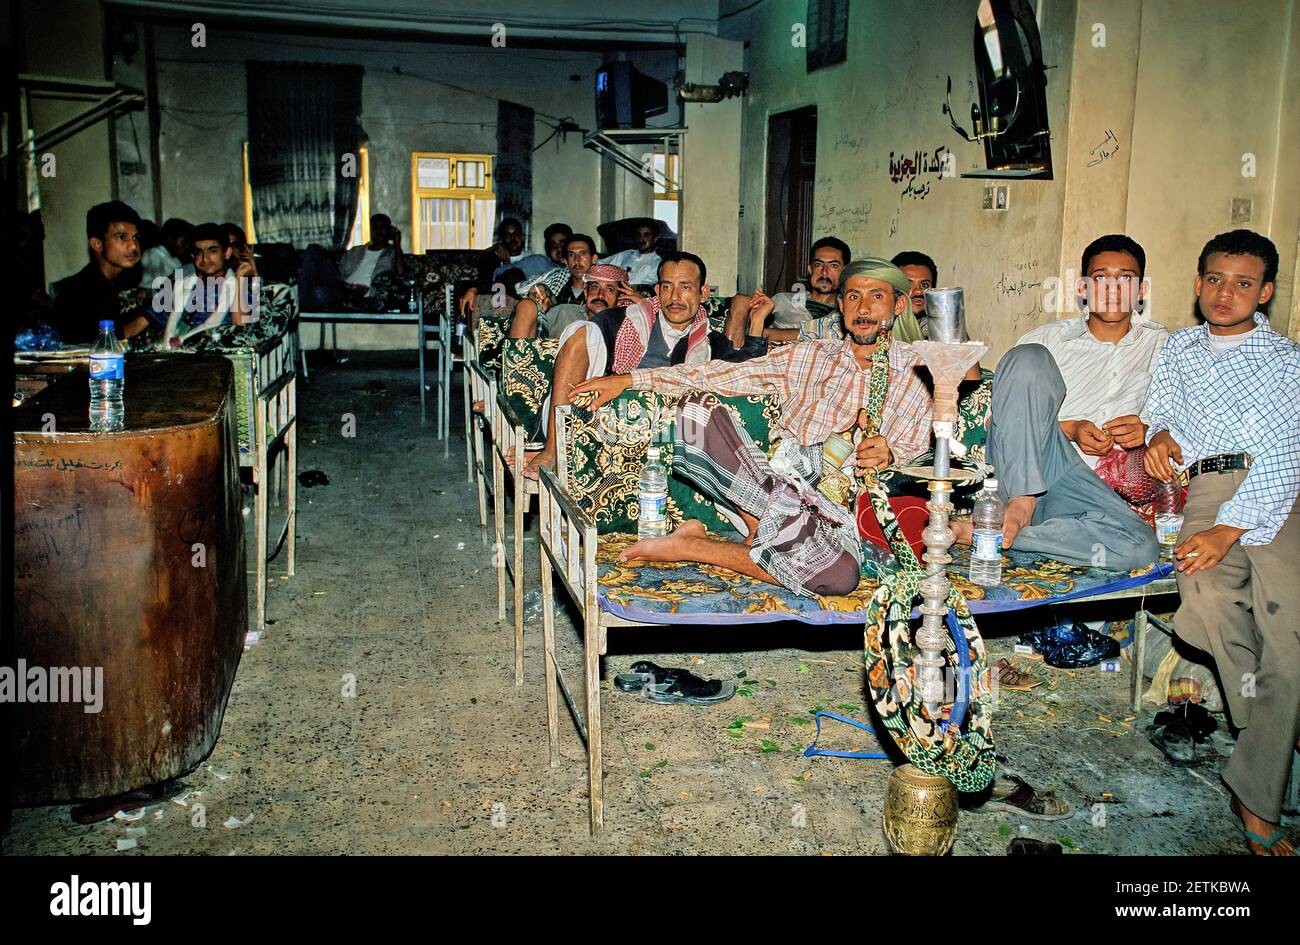 Spezieller Raum zum Kauen von Qat - taiz - jemen Stockfoto